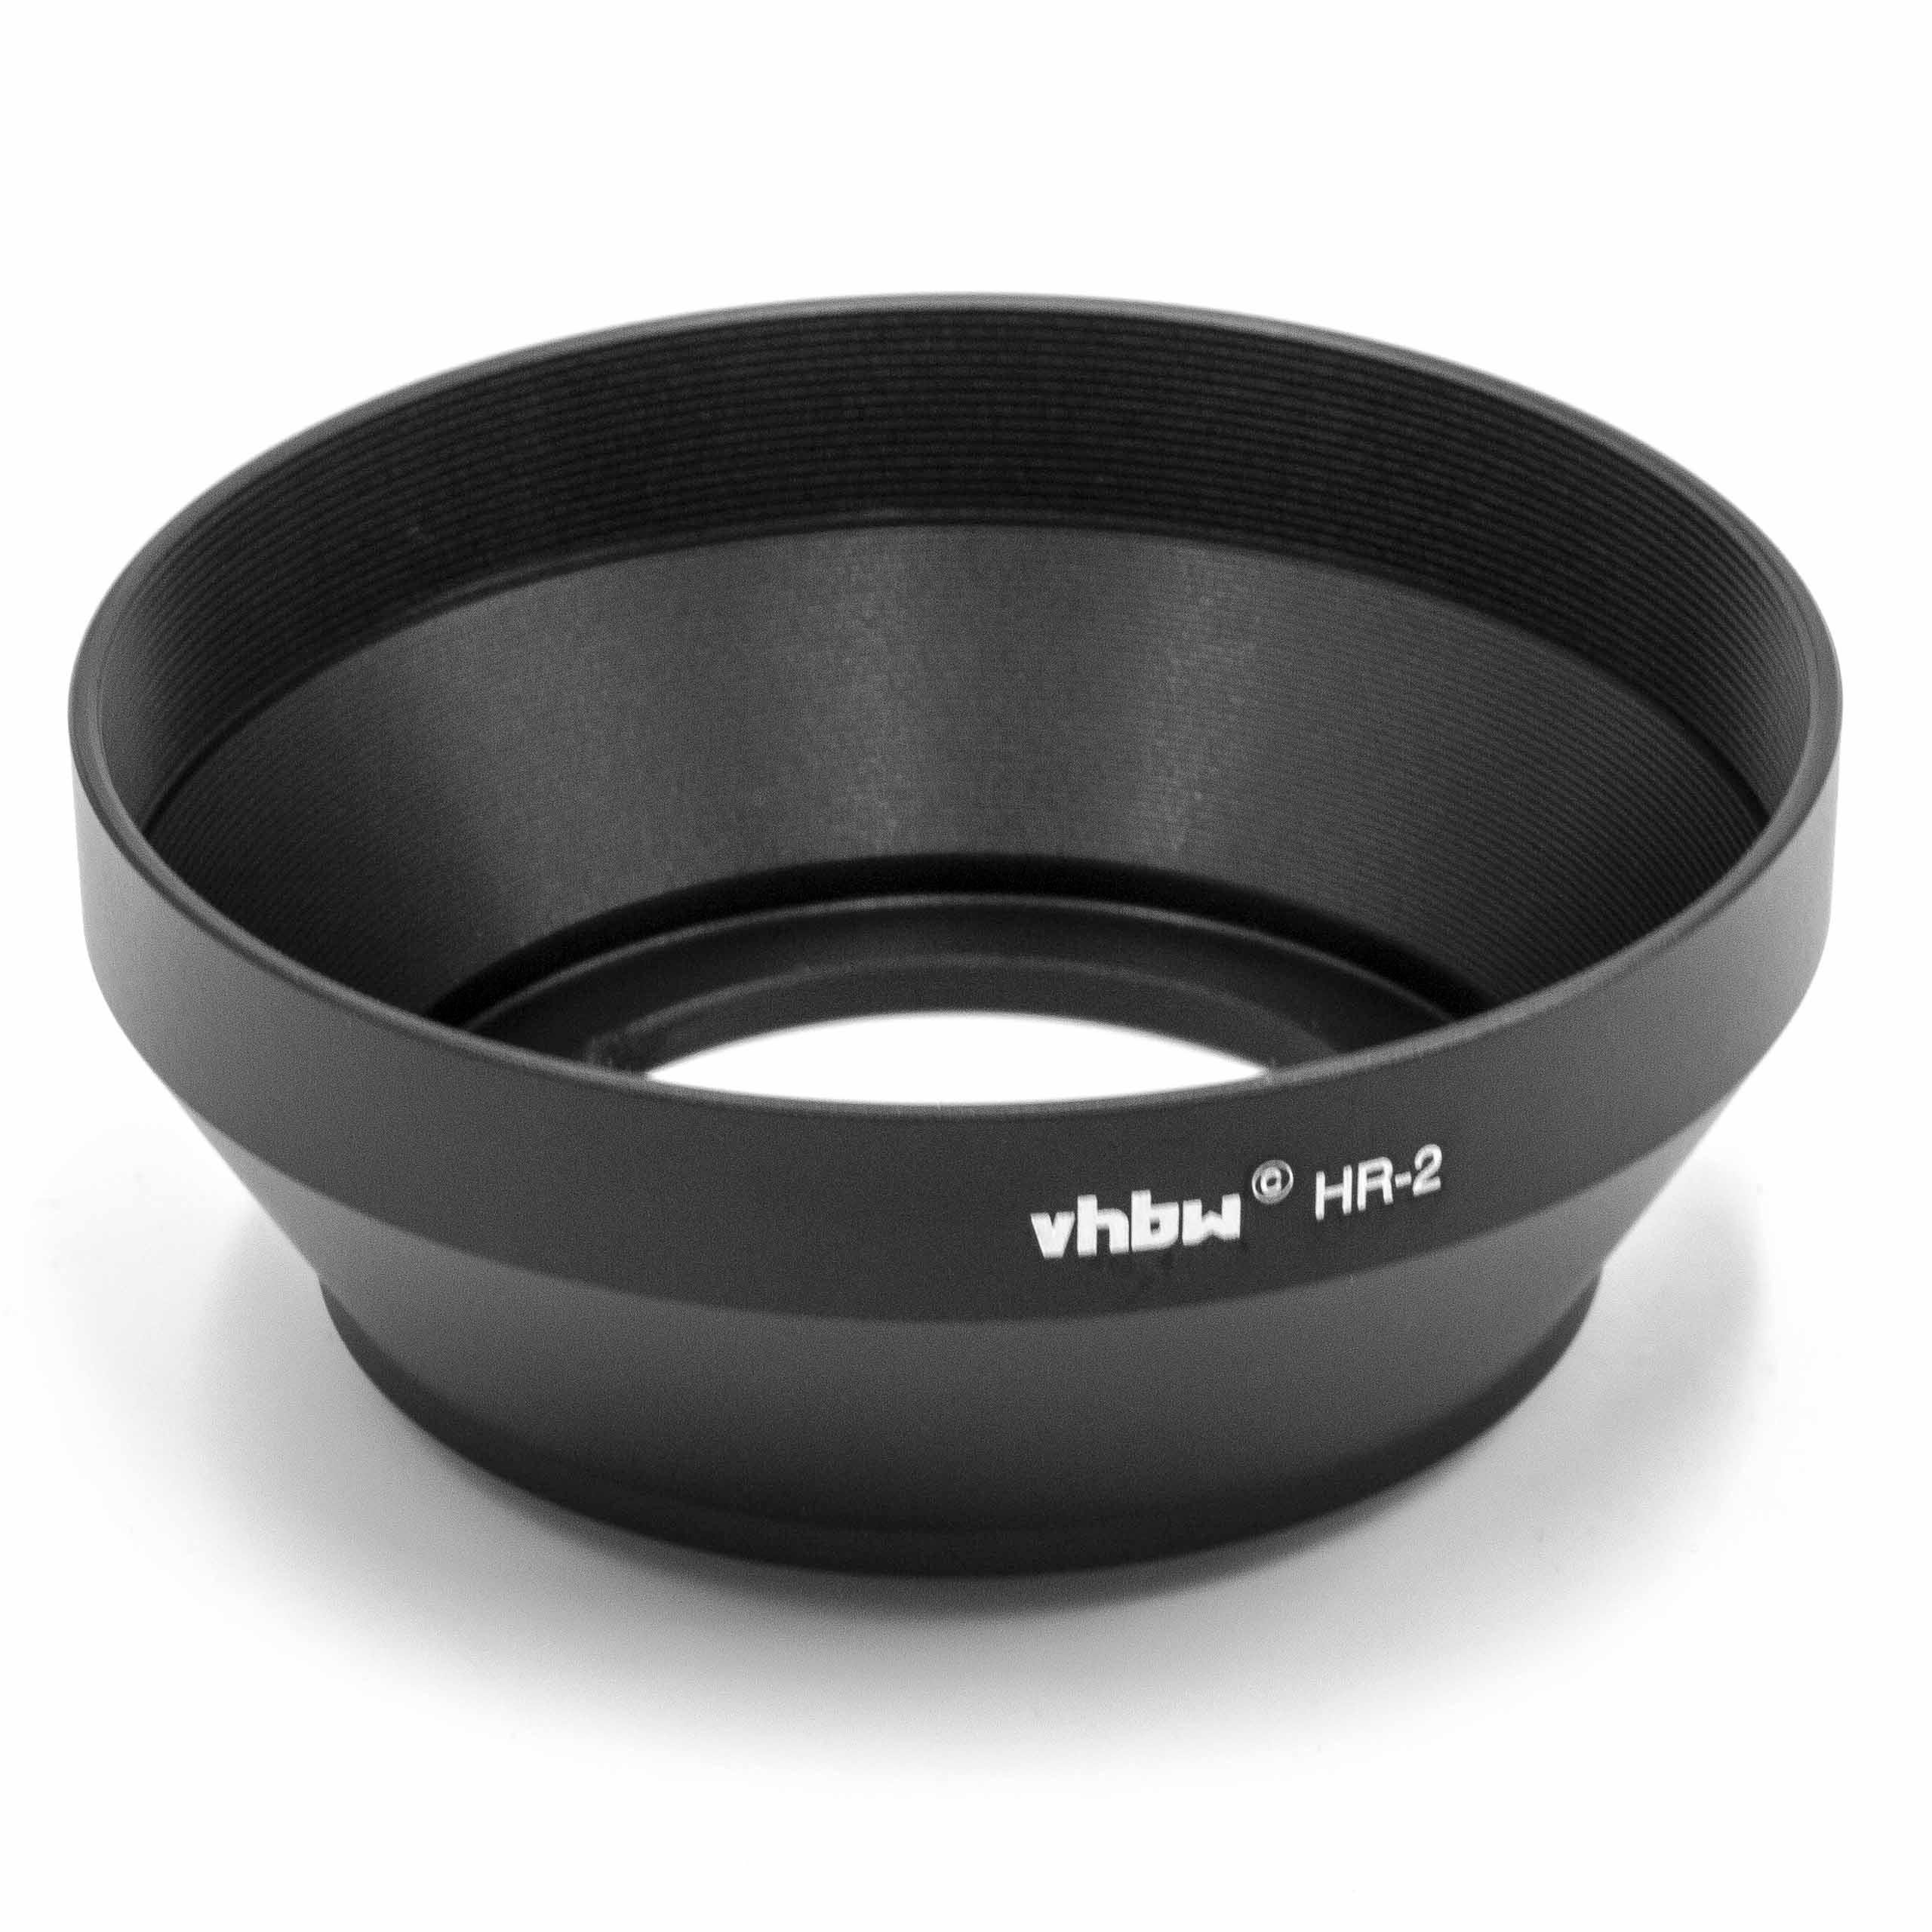 vhbw passend für Nikon Nikkor Gegenlichtblende 1:1.2 1:1.8D, 50mm AF 50mm AF 1:1.4D, 50mm